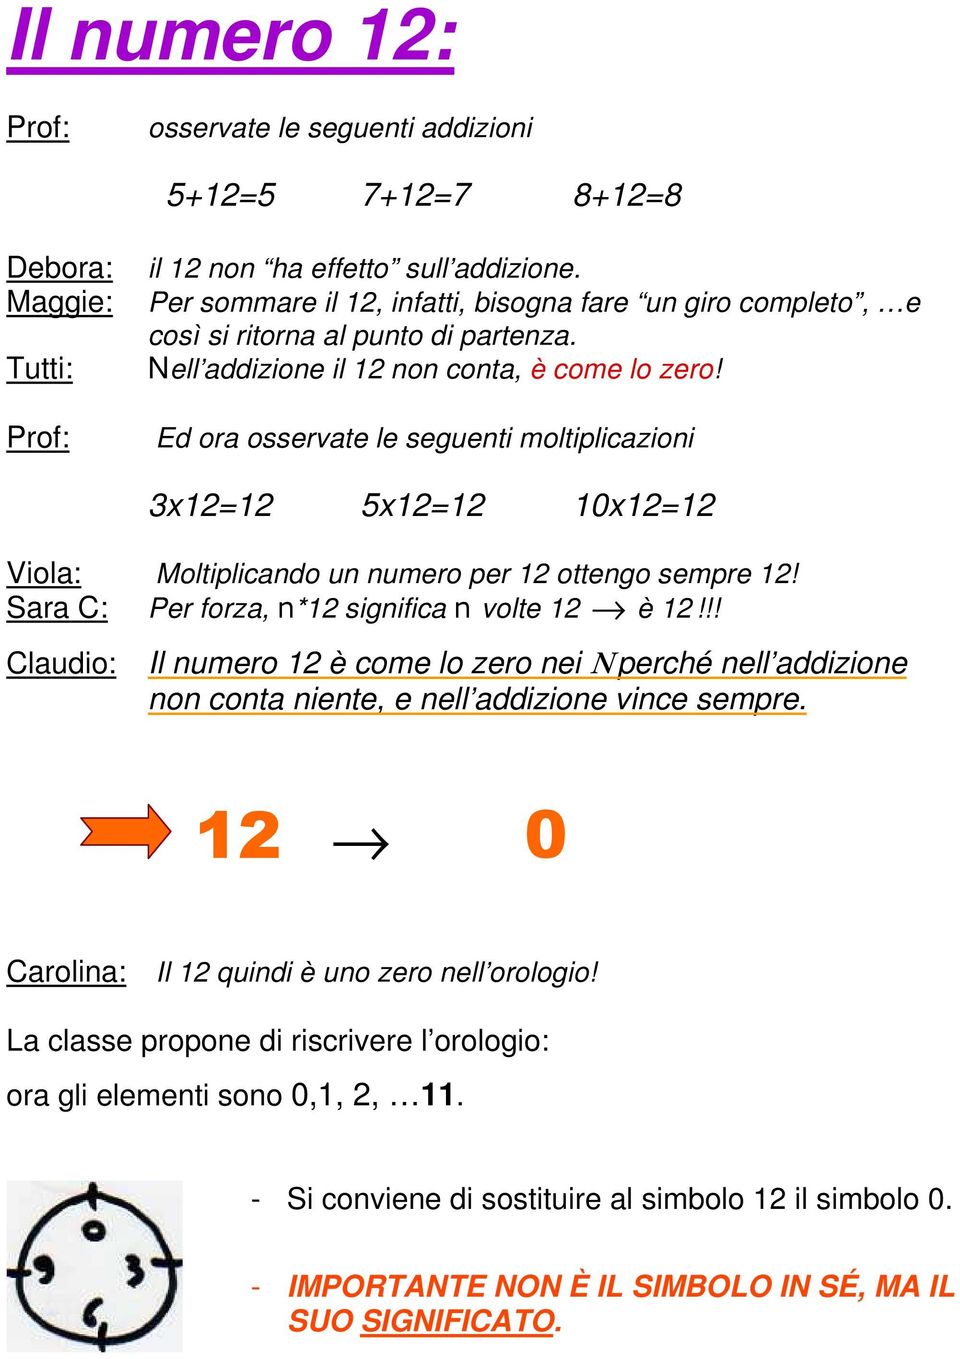 Ed ora osservate le seguenti moltiplicazioni 3x12=12 5x12=12 10x12=12 Viola: Moltiplicando un numero per 12 ottengo sempre 12! Sara C: Per forza, n*12 significa n volte 12 è 12!